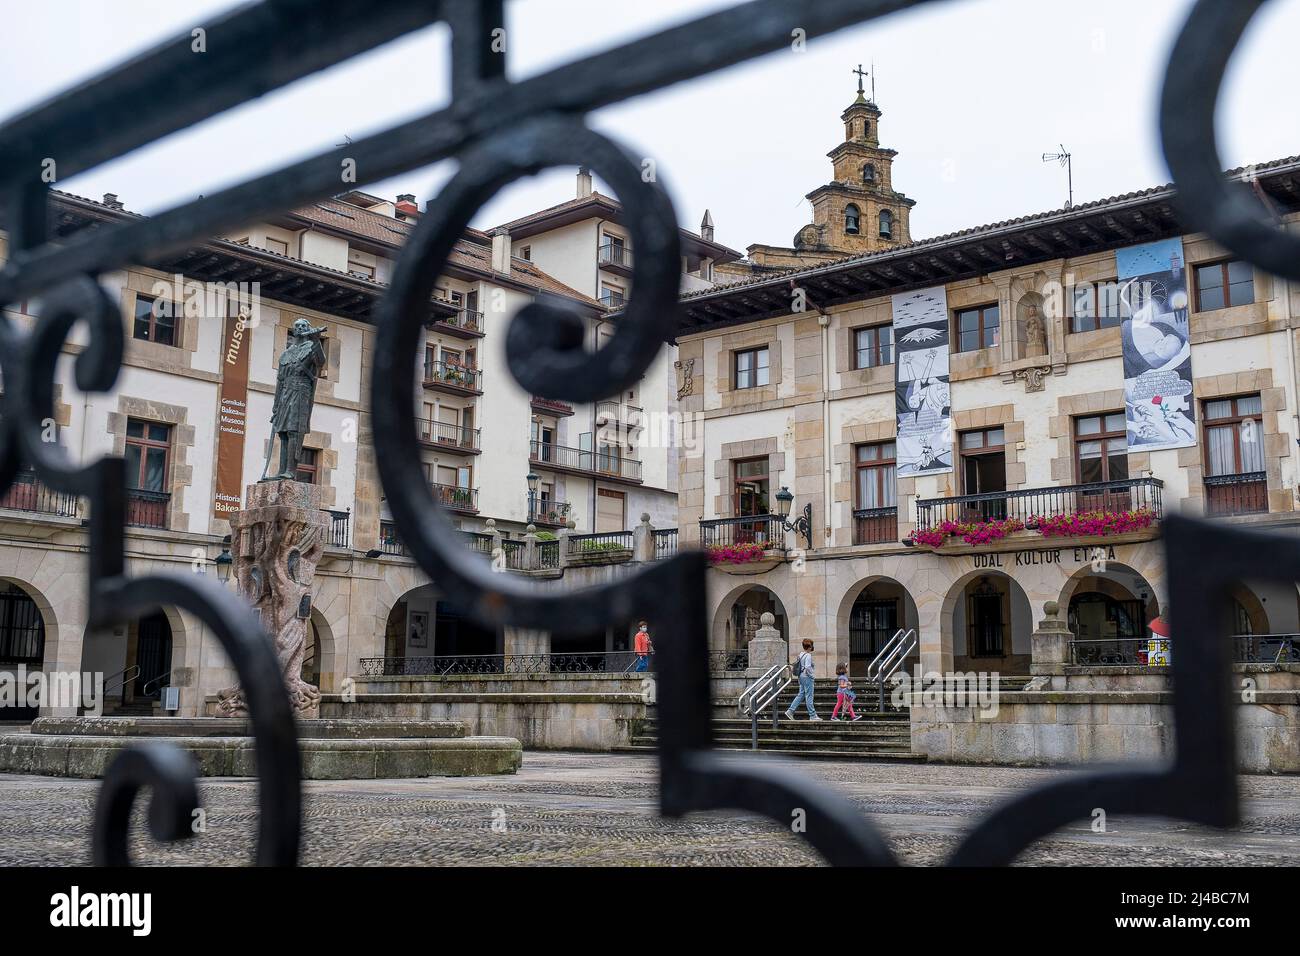 Don Tello Statue und Kulturhaus In Plaza der Jurisdiktionen, Gernika-Lumo, Baskisches Land, Spanien Stockfoto